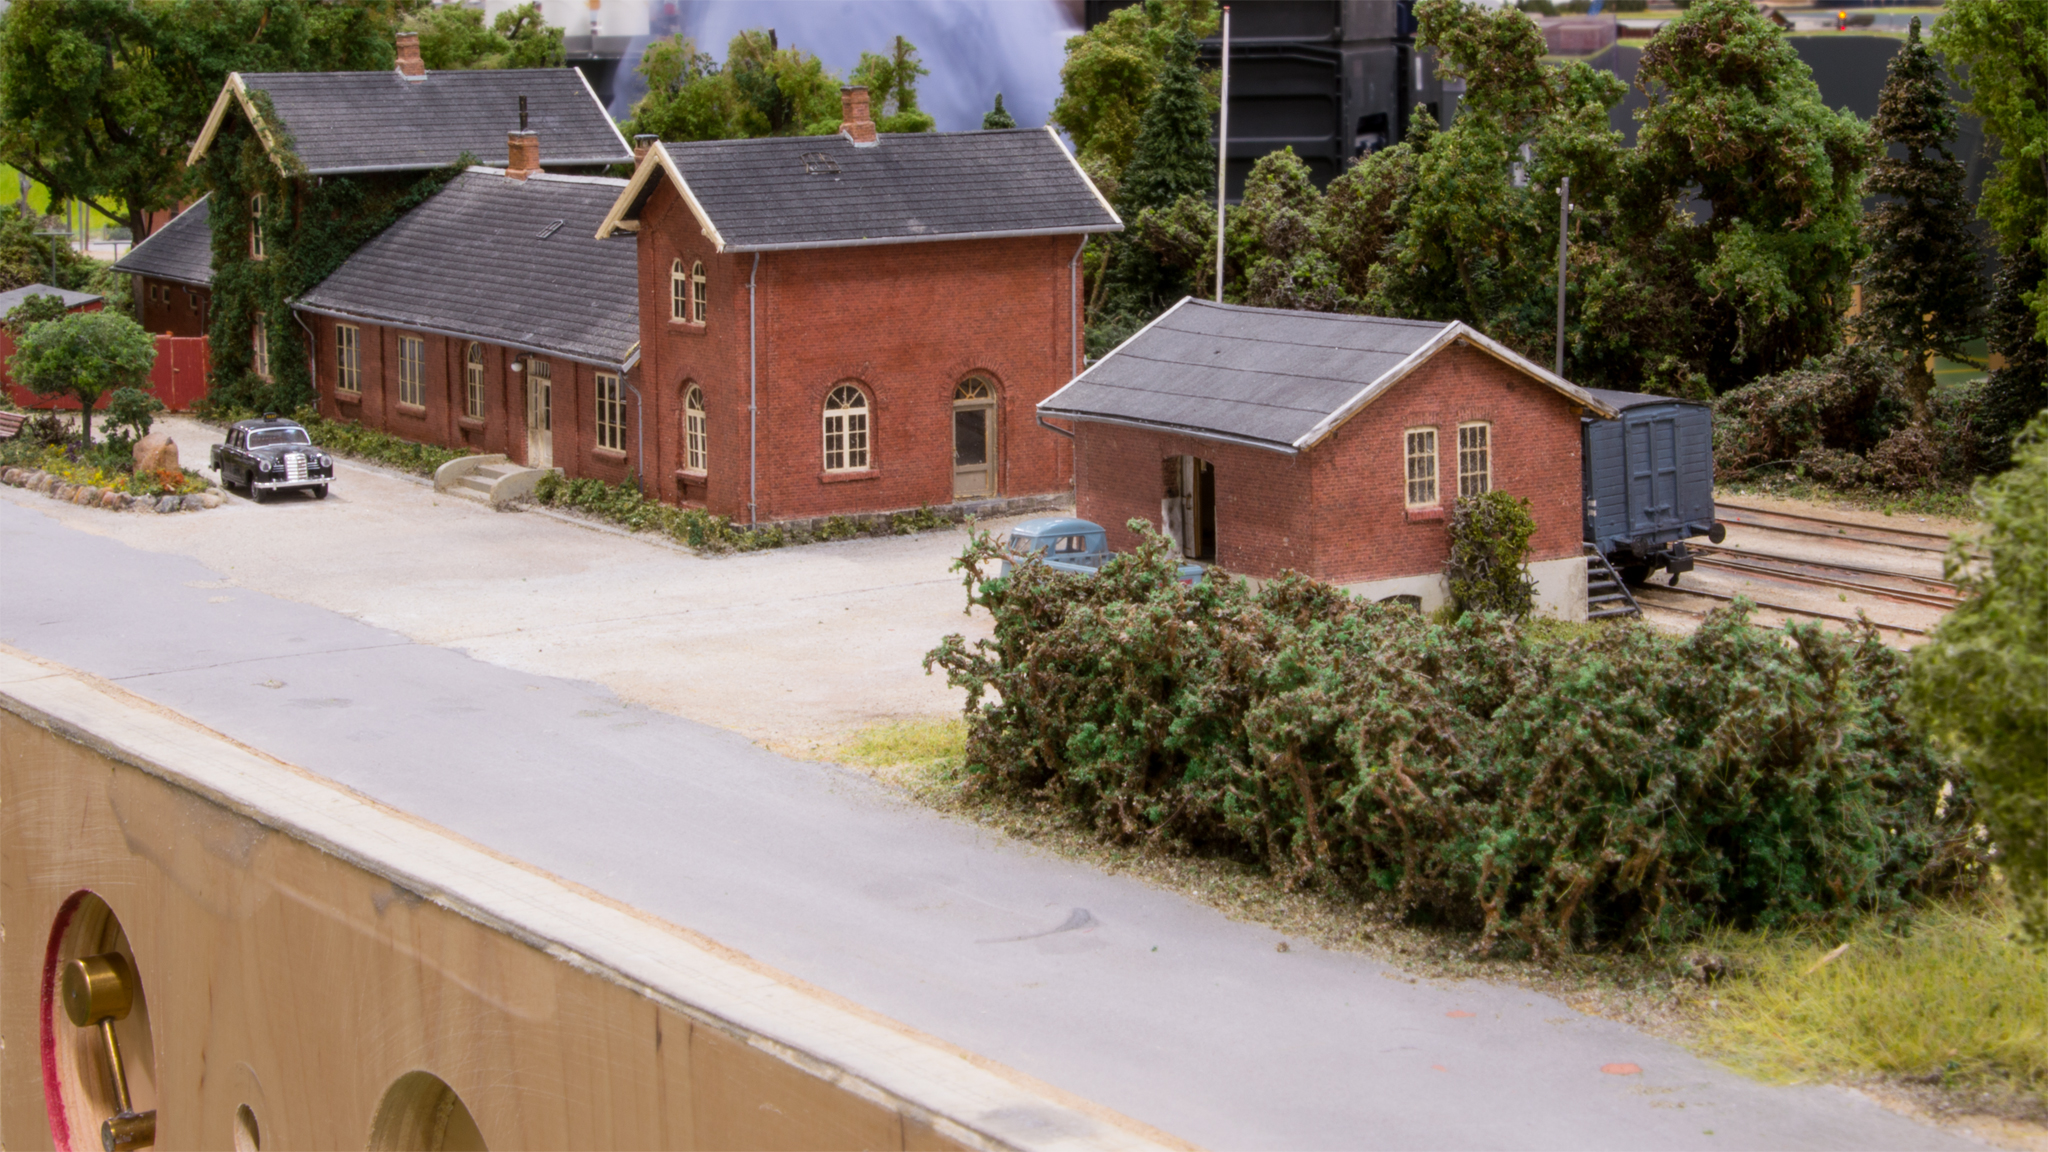 Hou stationsbygning og pakhus.  Nederst i venstre hjørne ses Henriks bud på et vippehåndtag til manuel omstilling af sporskifter.